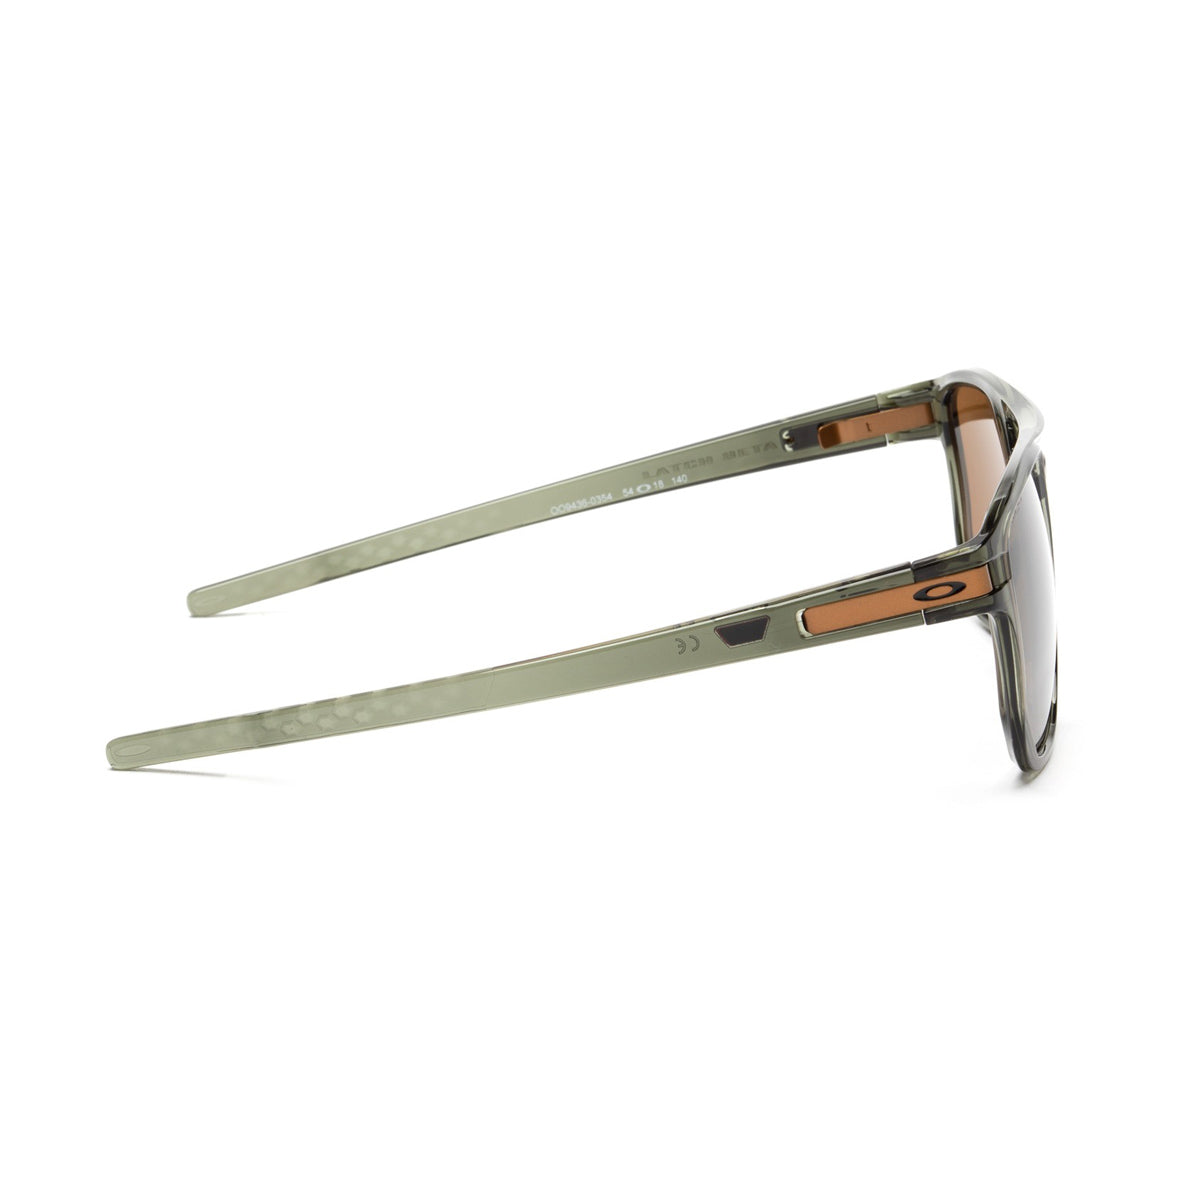 OO9436 943603-Occhiali da sole-Oakley-Un occhiale che rimane sportivo nella sua essenza, dinamico con il suo frontale squadrato e il ponte a chiave. Oakley Latch Beta è realizzato in un materiale esclusivo chiamato O-Metter, leggero, comodo e resistente che vi permetterà di portare con voi in ogni situazione questi occhiali. Le lenti si presentano in una versione esclusiva di Oakley, ossia Prizm, una lente tecnologica in grado di ottimizzare i colori, rendendo i dettagli perfetti ed i contrasti potenziati. 